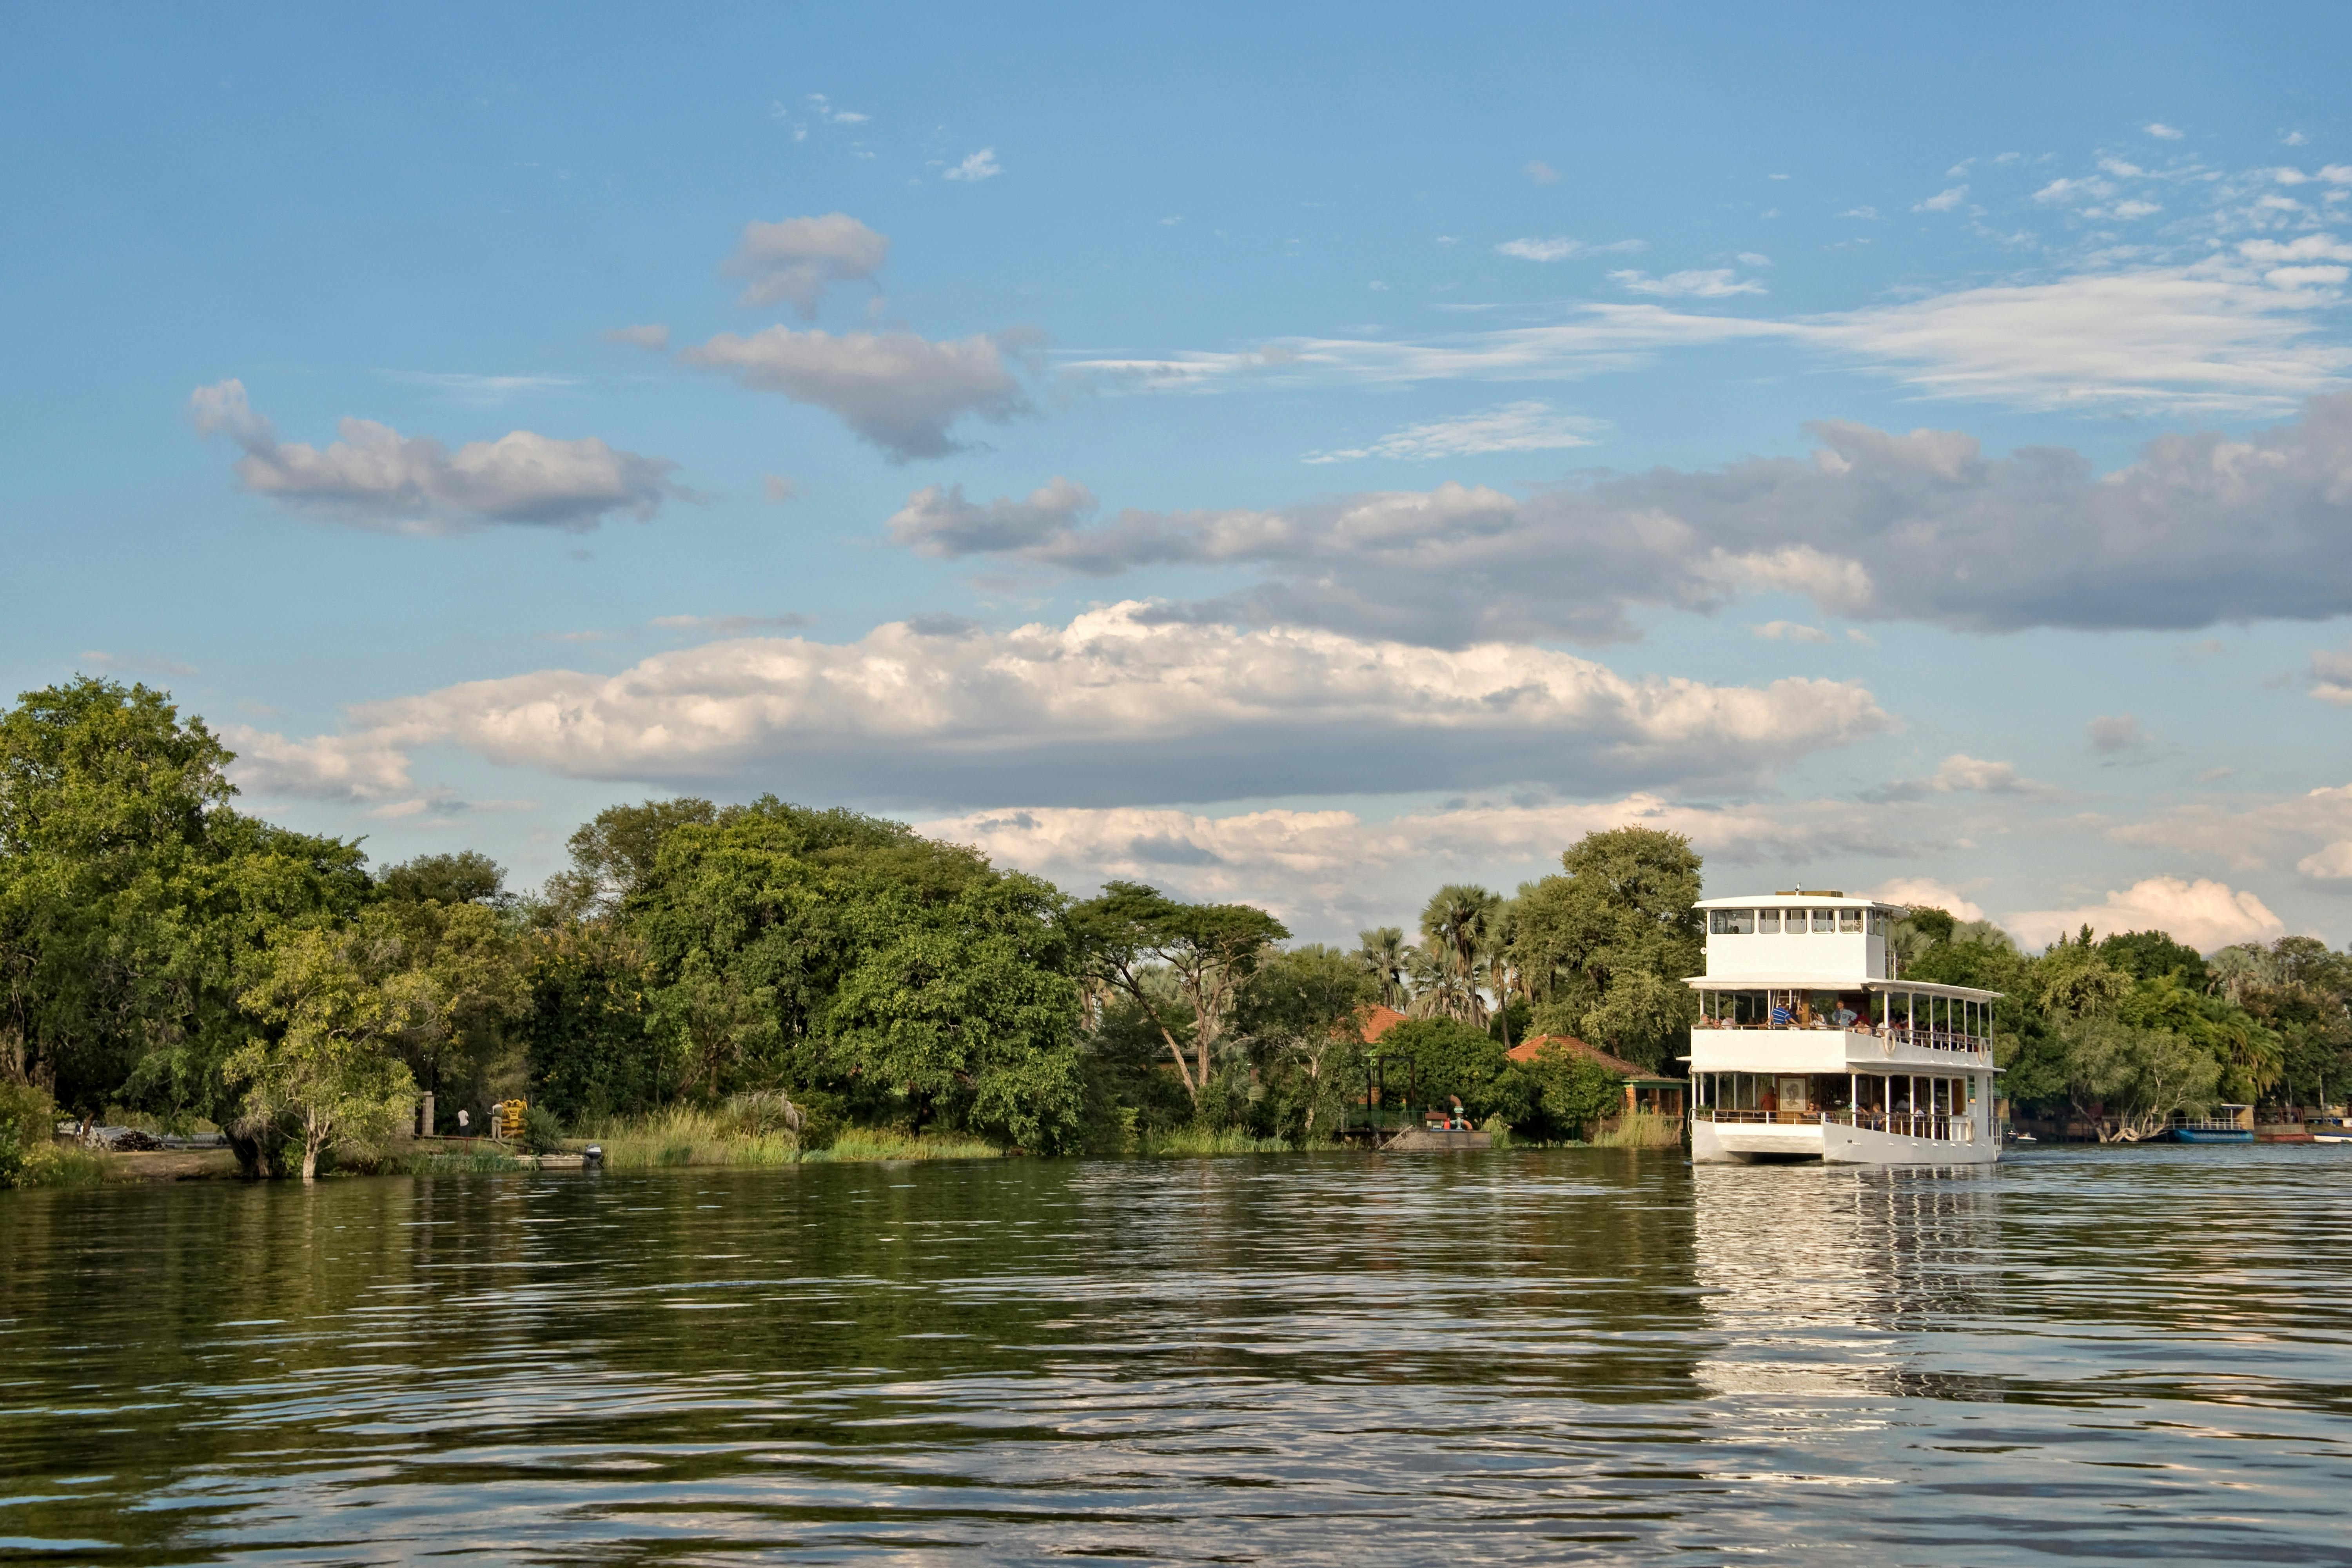 Zambezi River dinner cruise from Zimbabwe side Musement